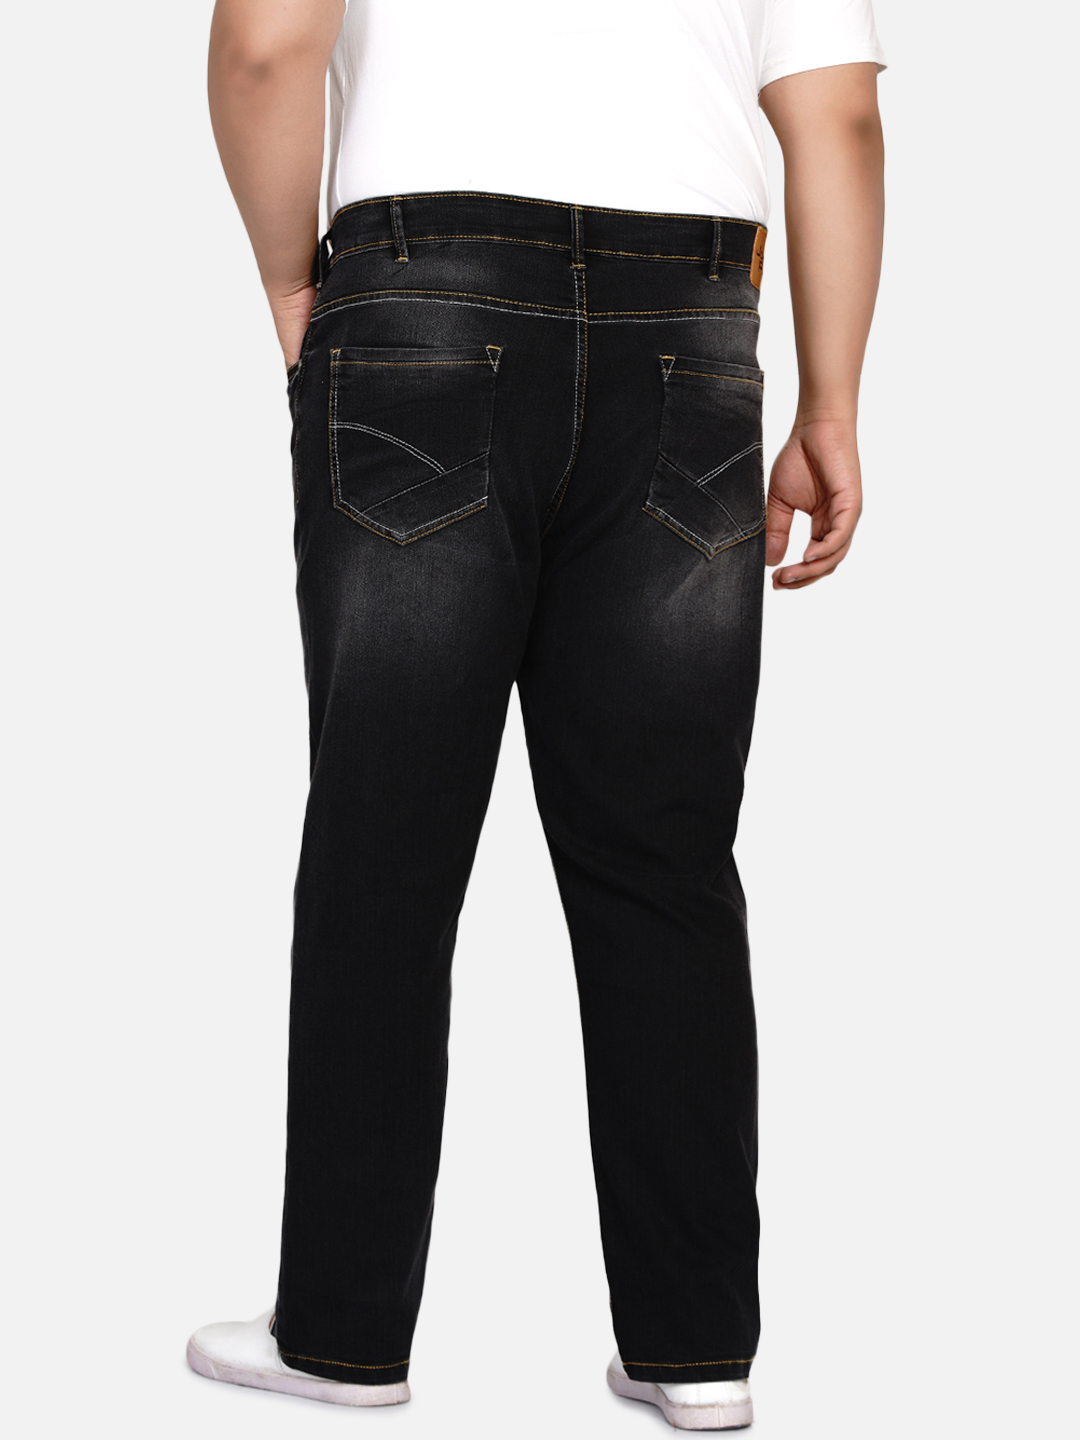 bottomwear/jeans/EJPJ2027/ejpj2027-5.jpg